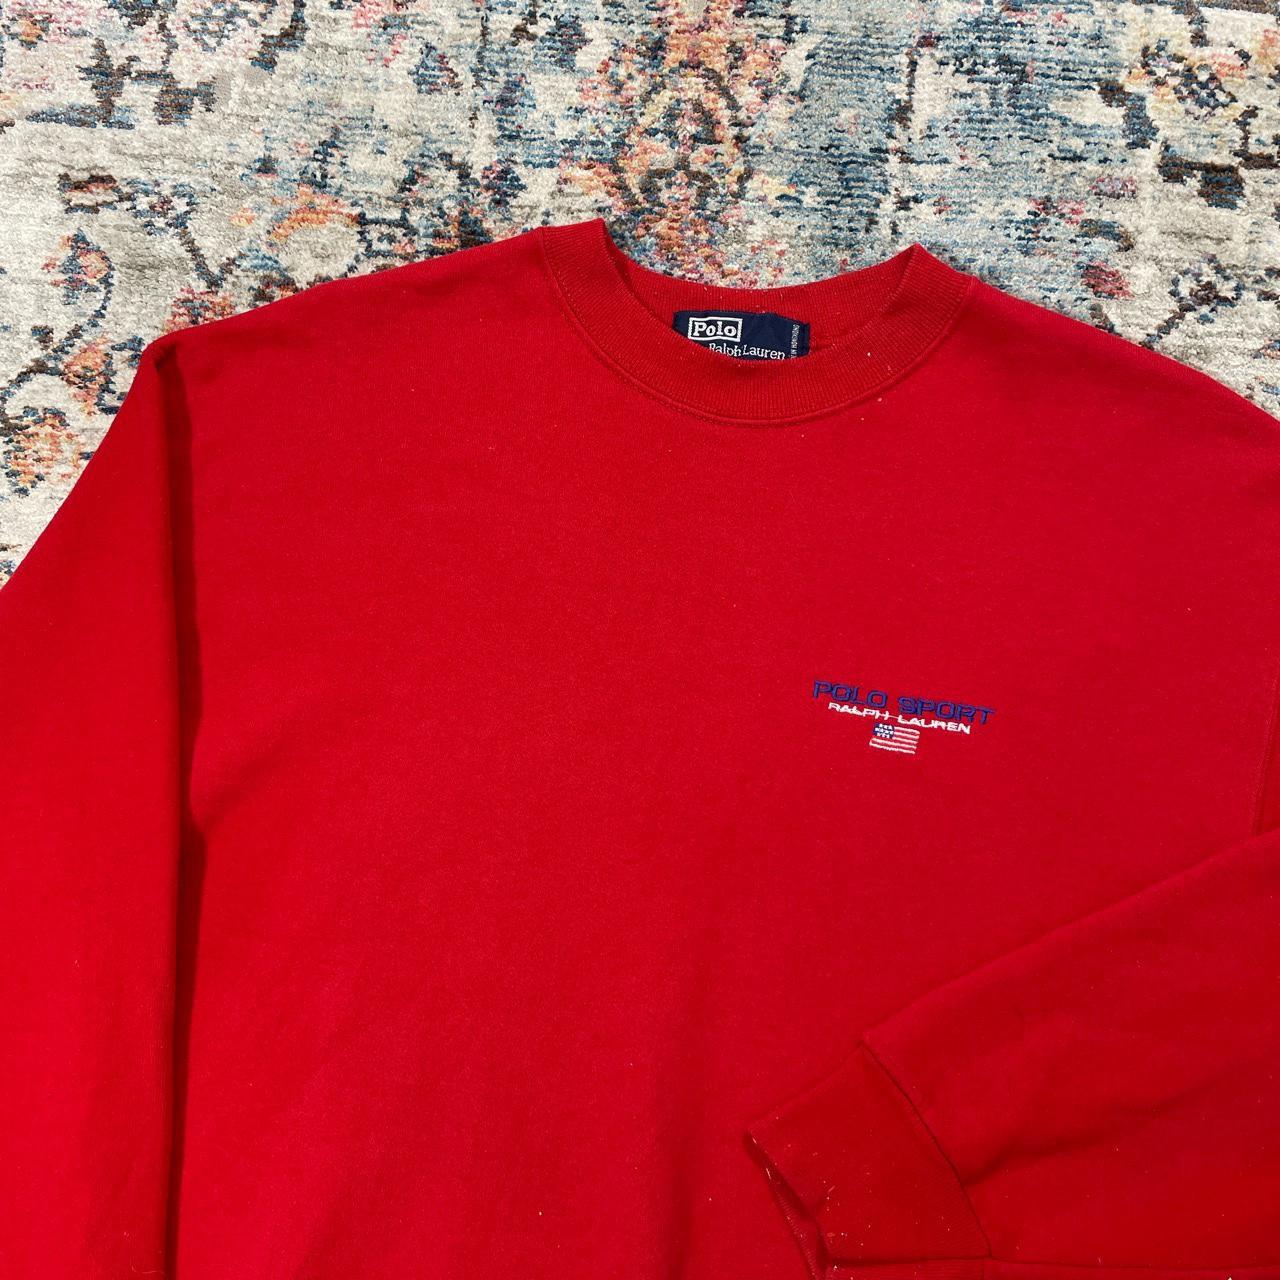 Vintage Ralph Lauren Red Sweatshirt